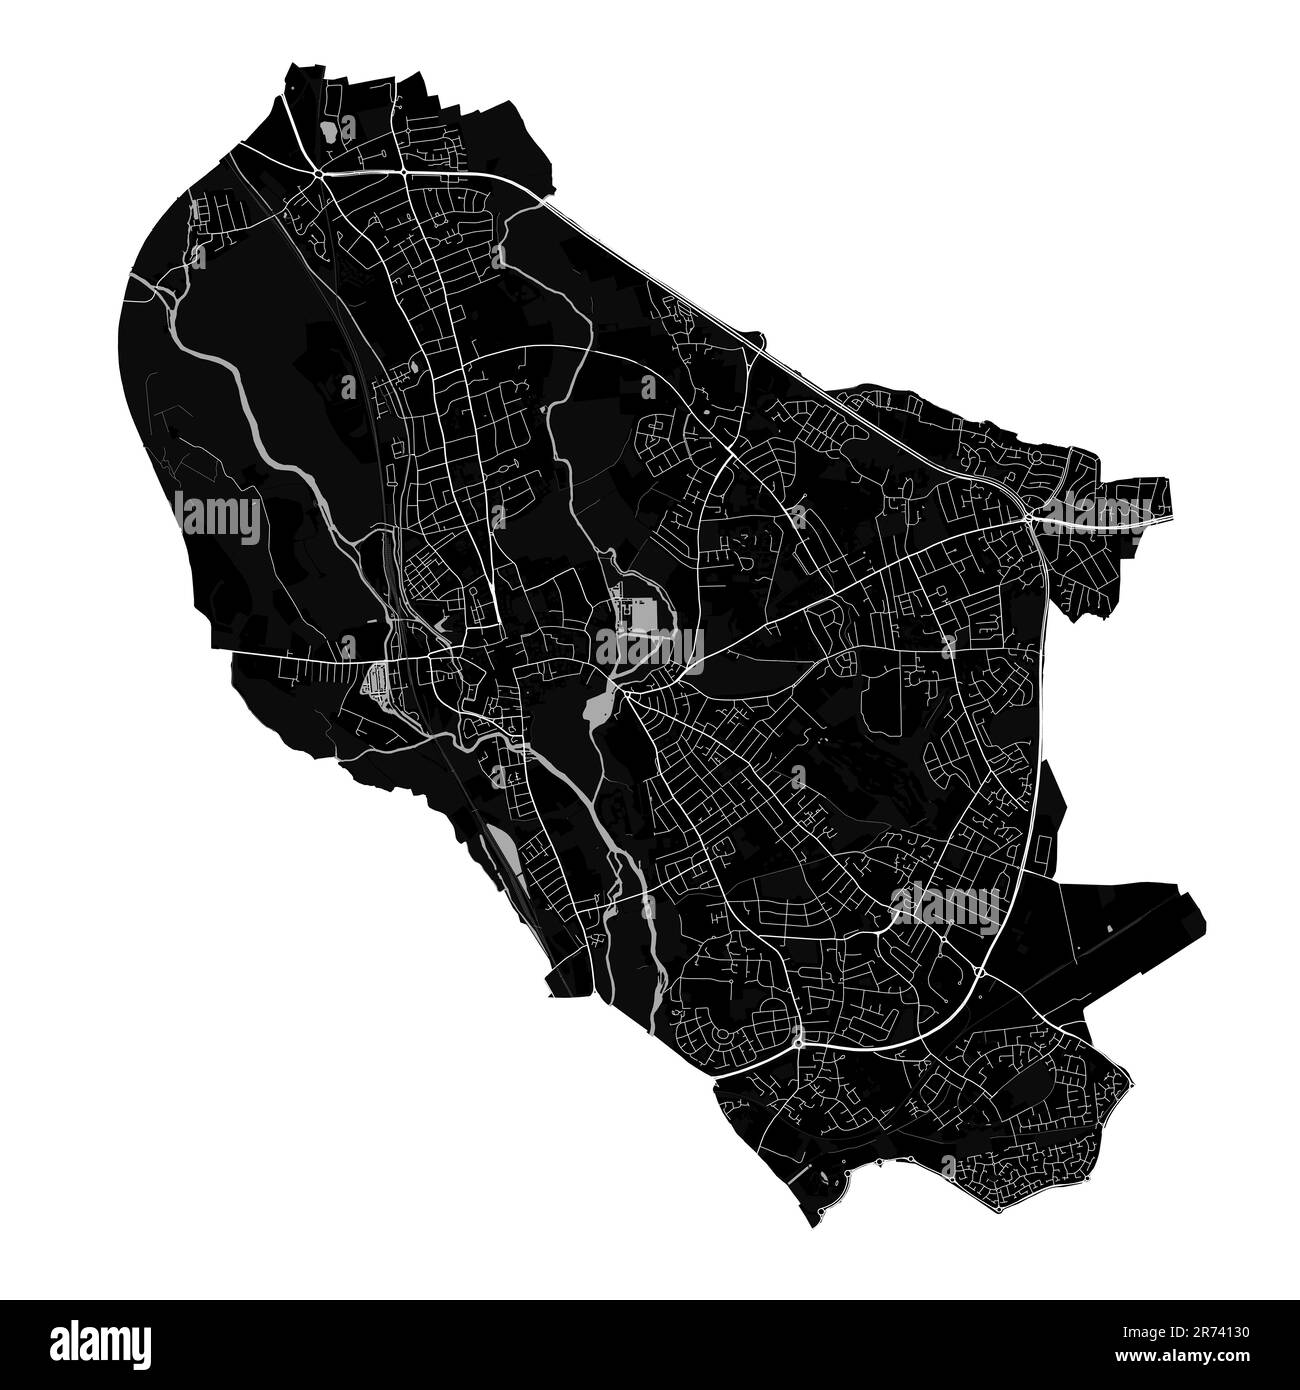 Mappa nera della città di Oxford, Inghilterra, Regno Unito. Mappa amministrativa dettagliata con strade e ferrovie, parchi e fiumi. Confini della città. Illustrazione Vettoriale